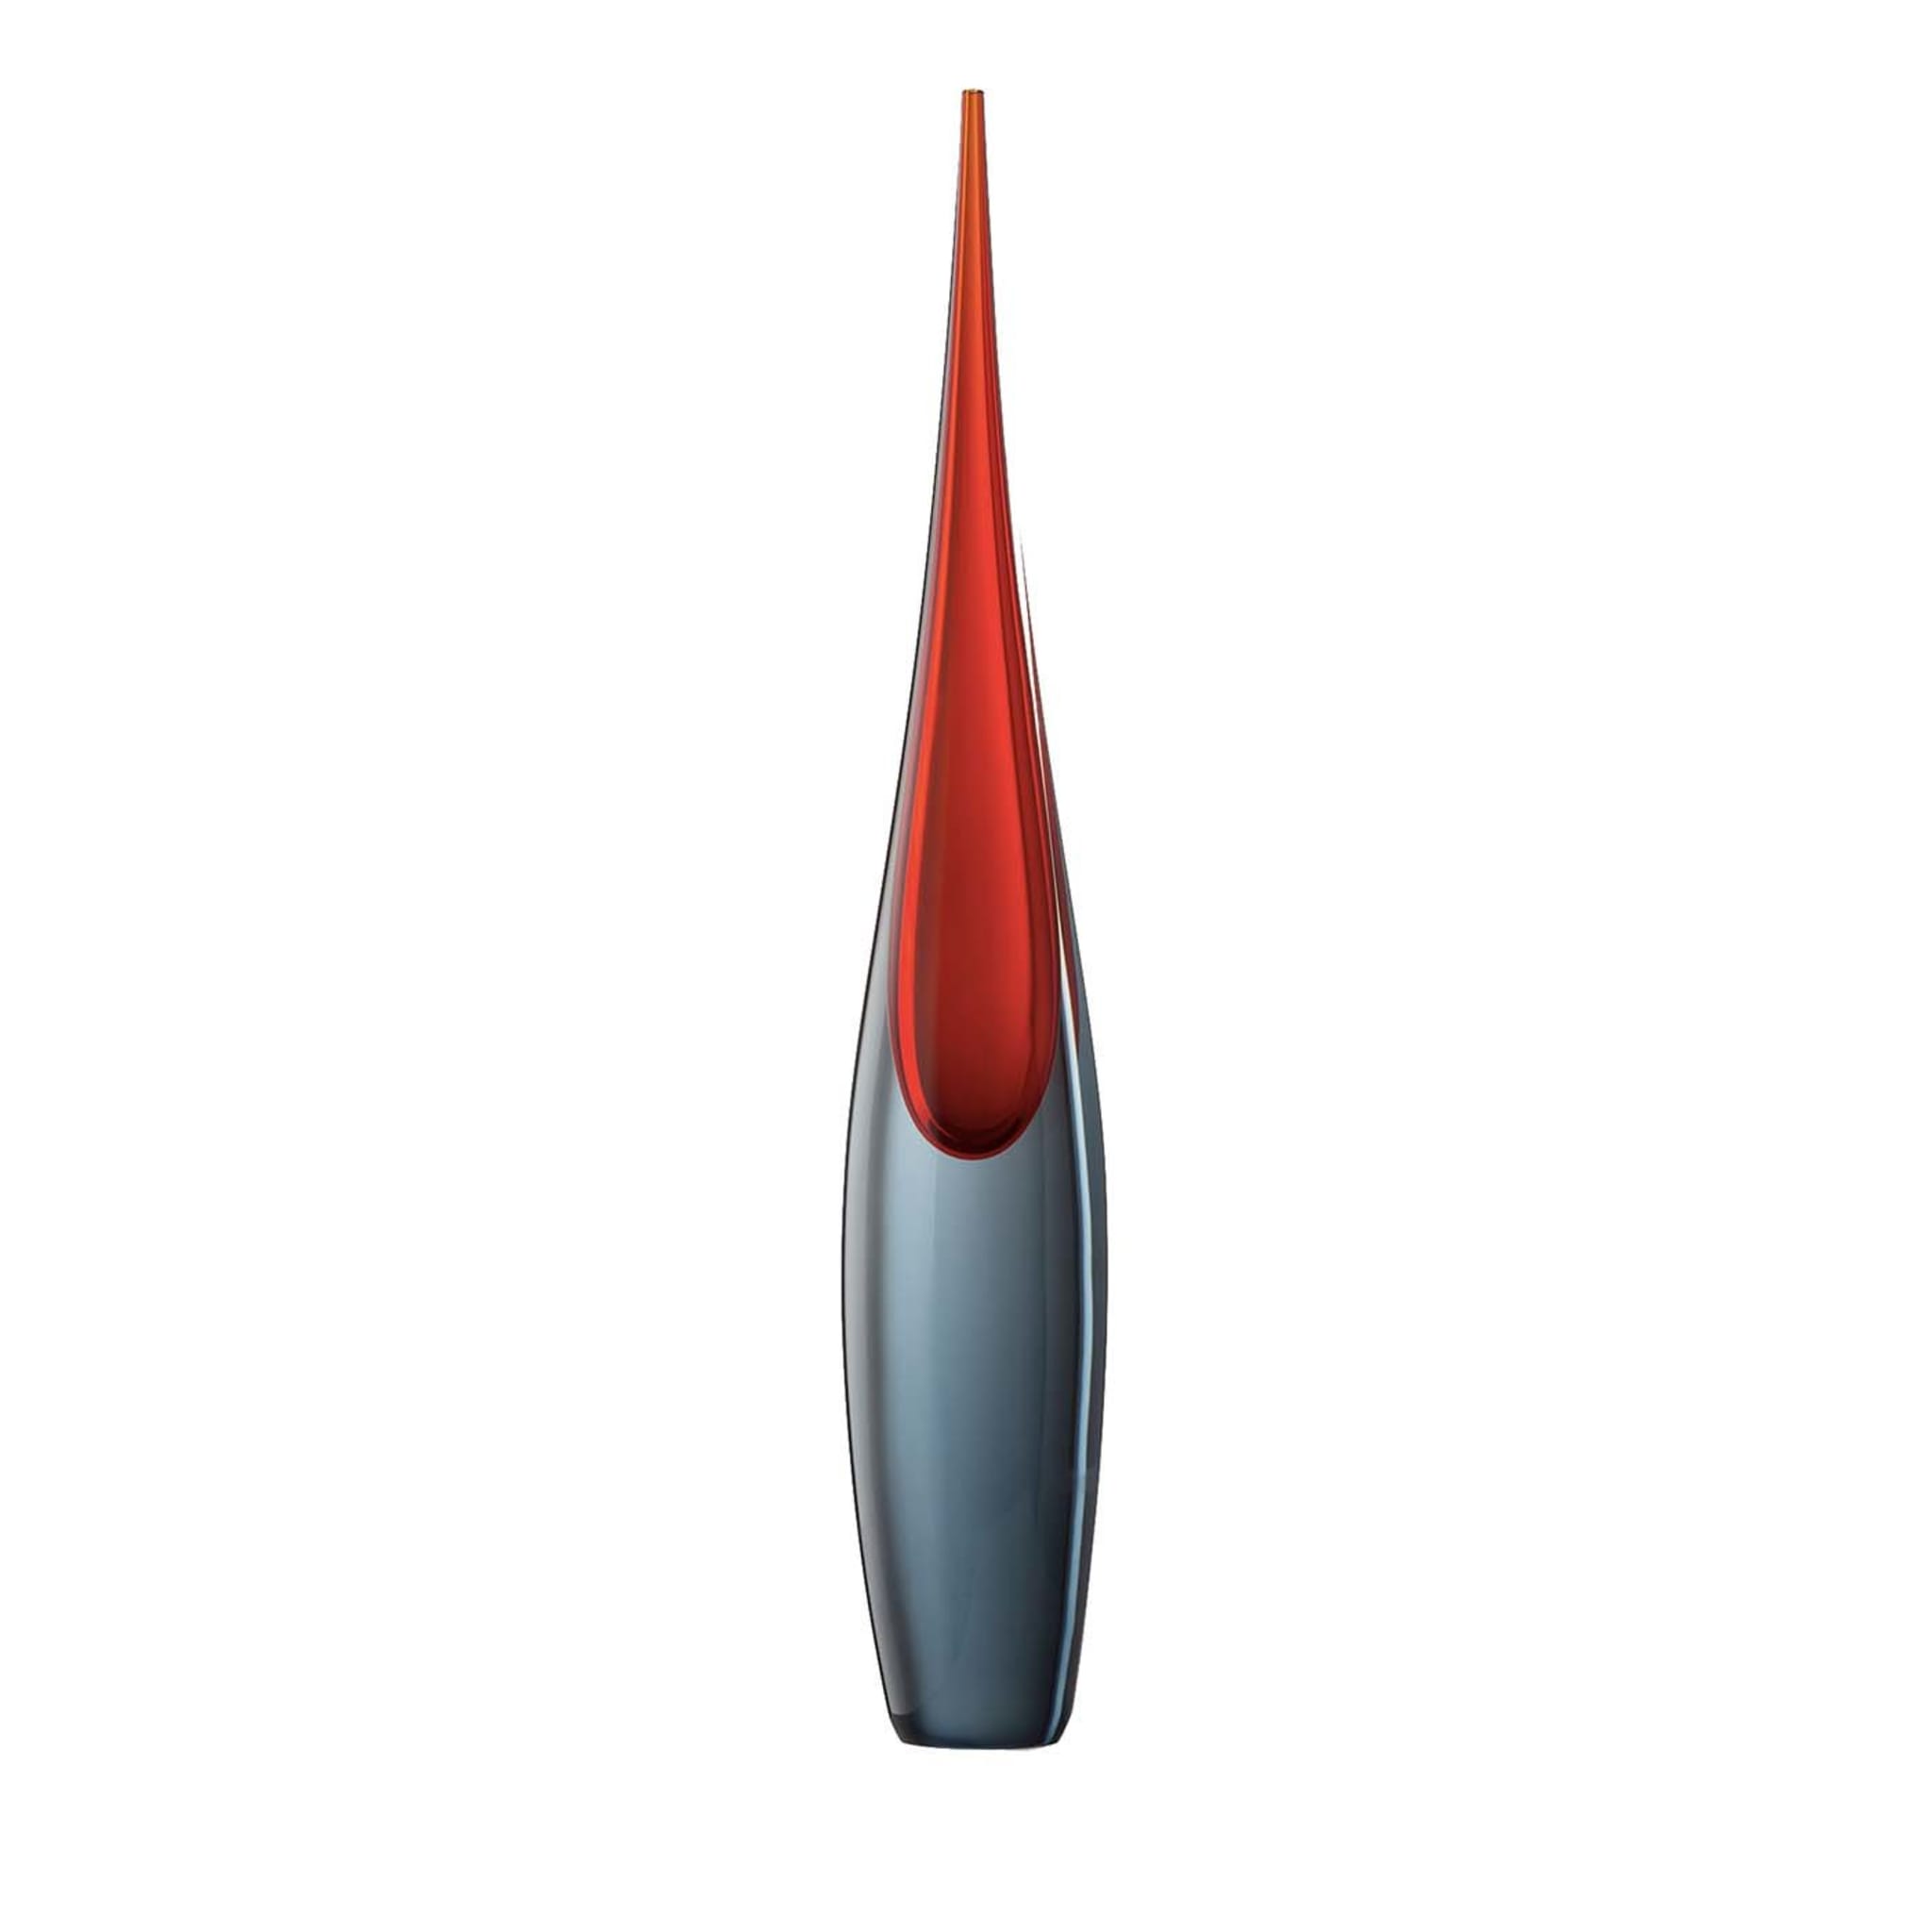 Pinnacoli Mittlere Vase (Rot/Grau) von Luciano Gaspari - Hauptansicht